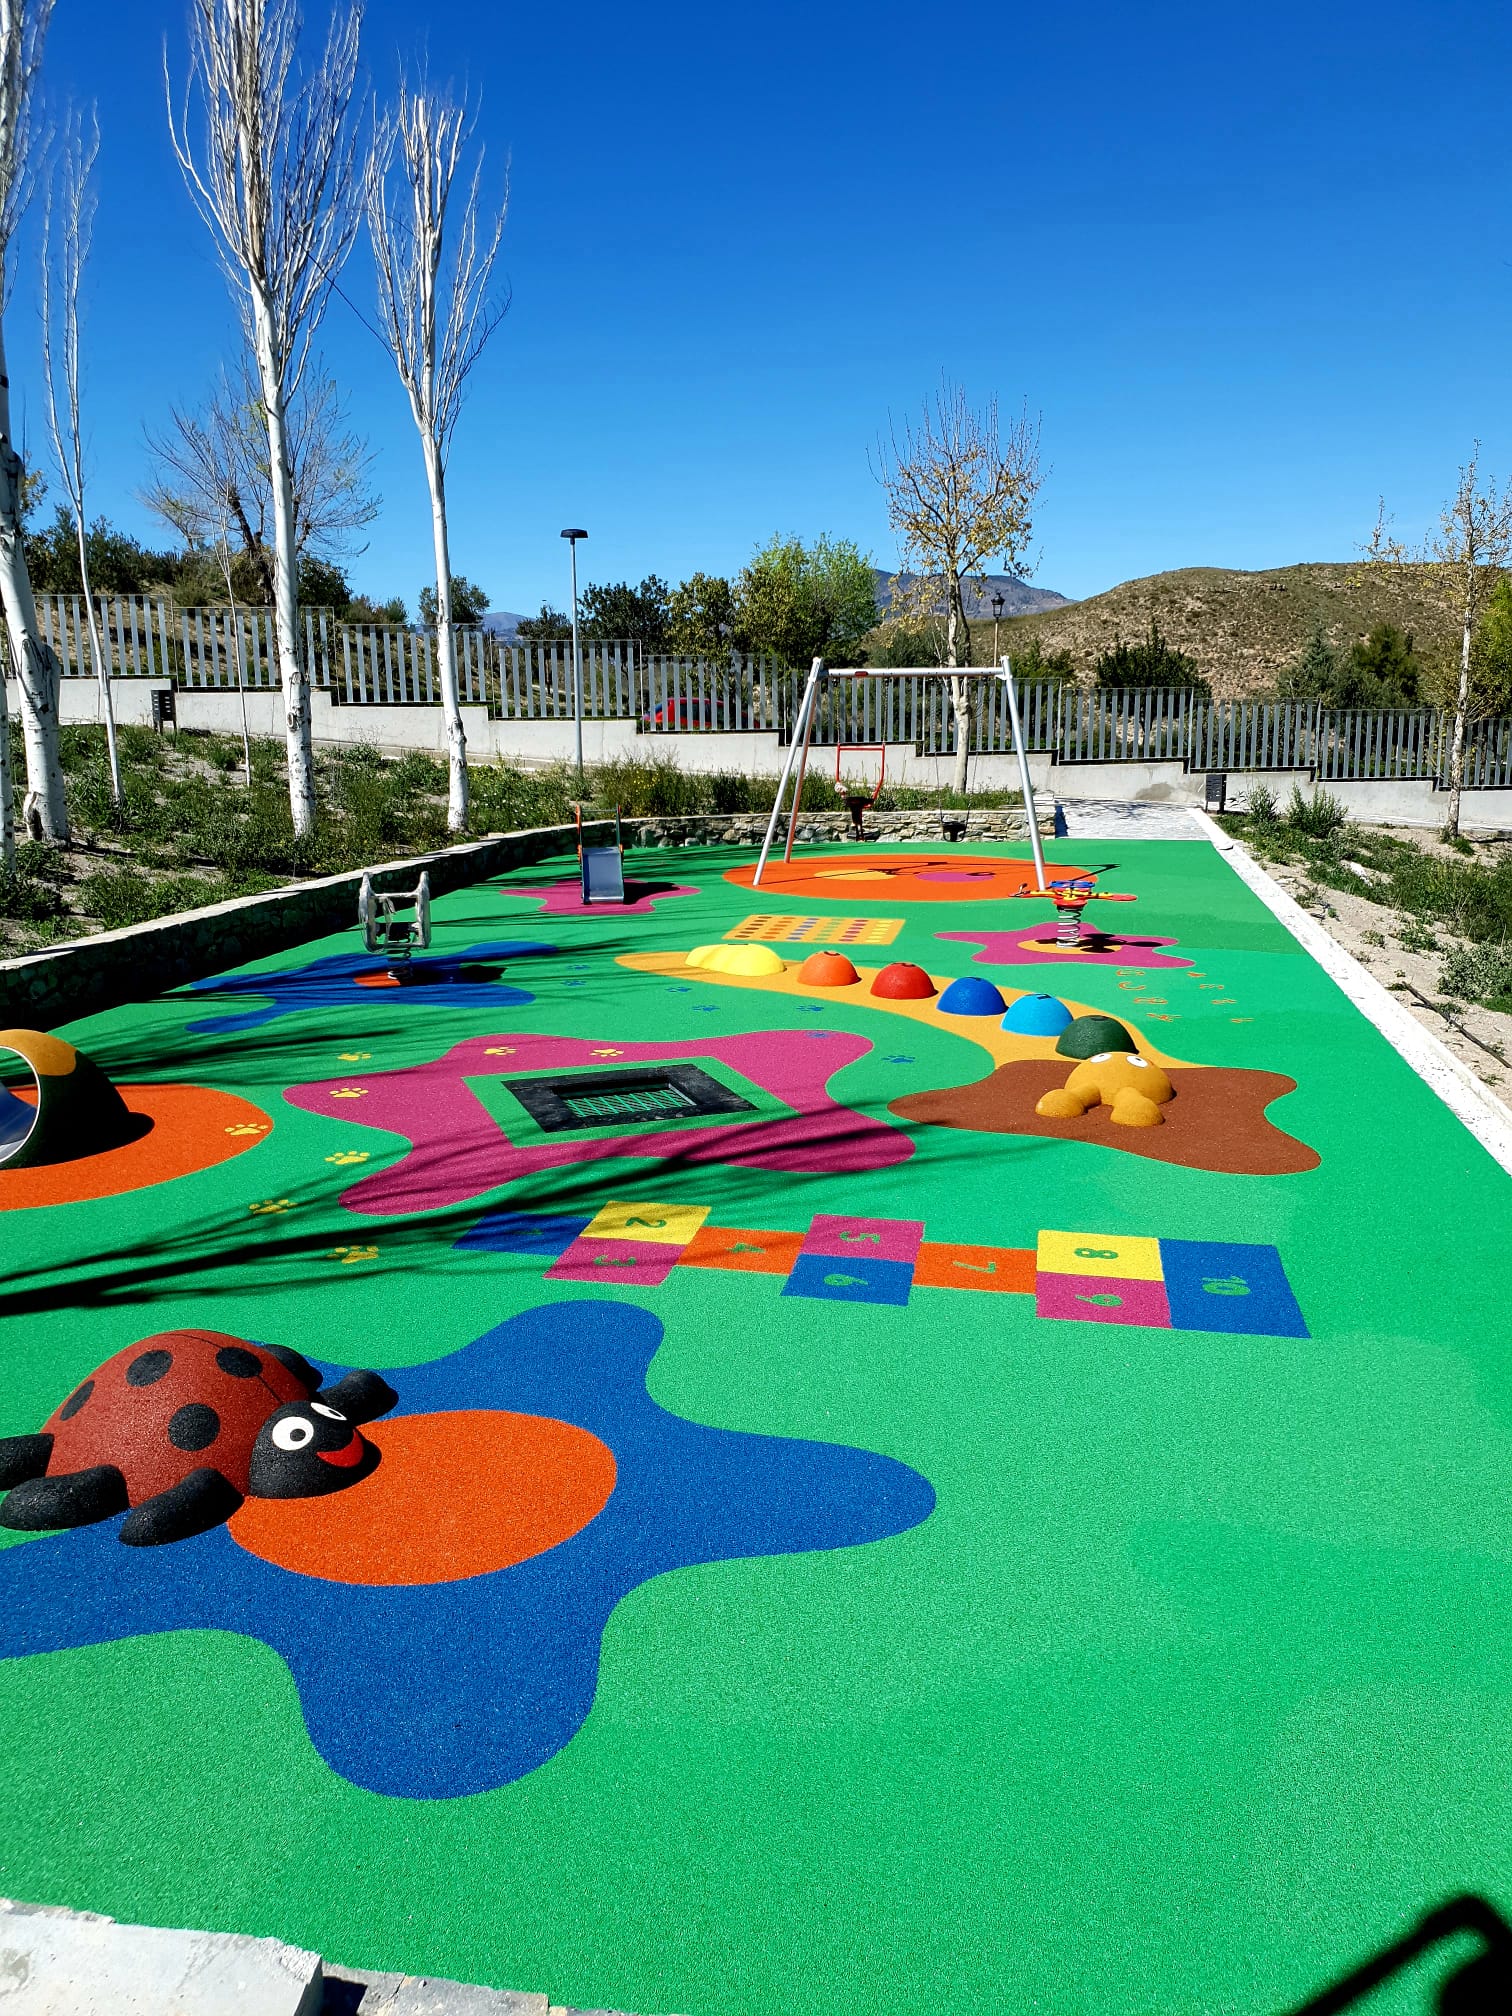 Instaladores de parques infantiles en Madrid - UrbanColex